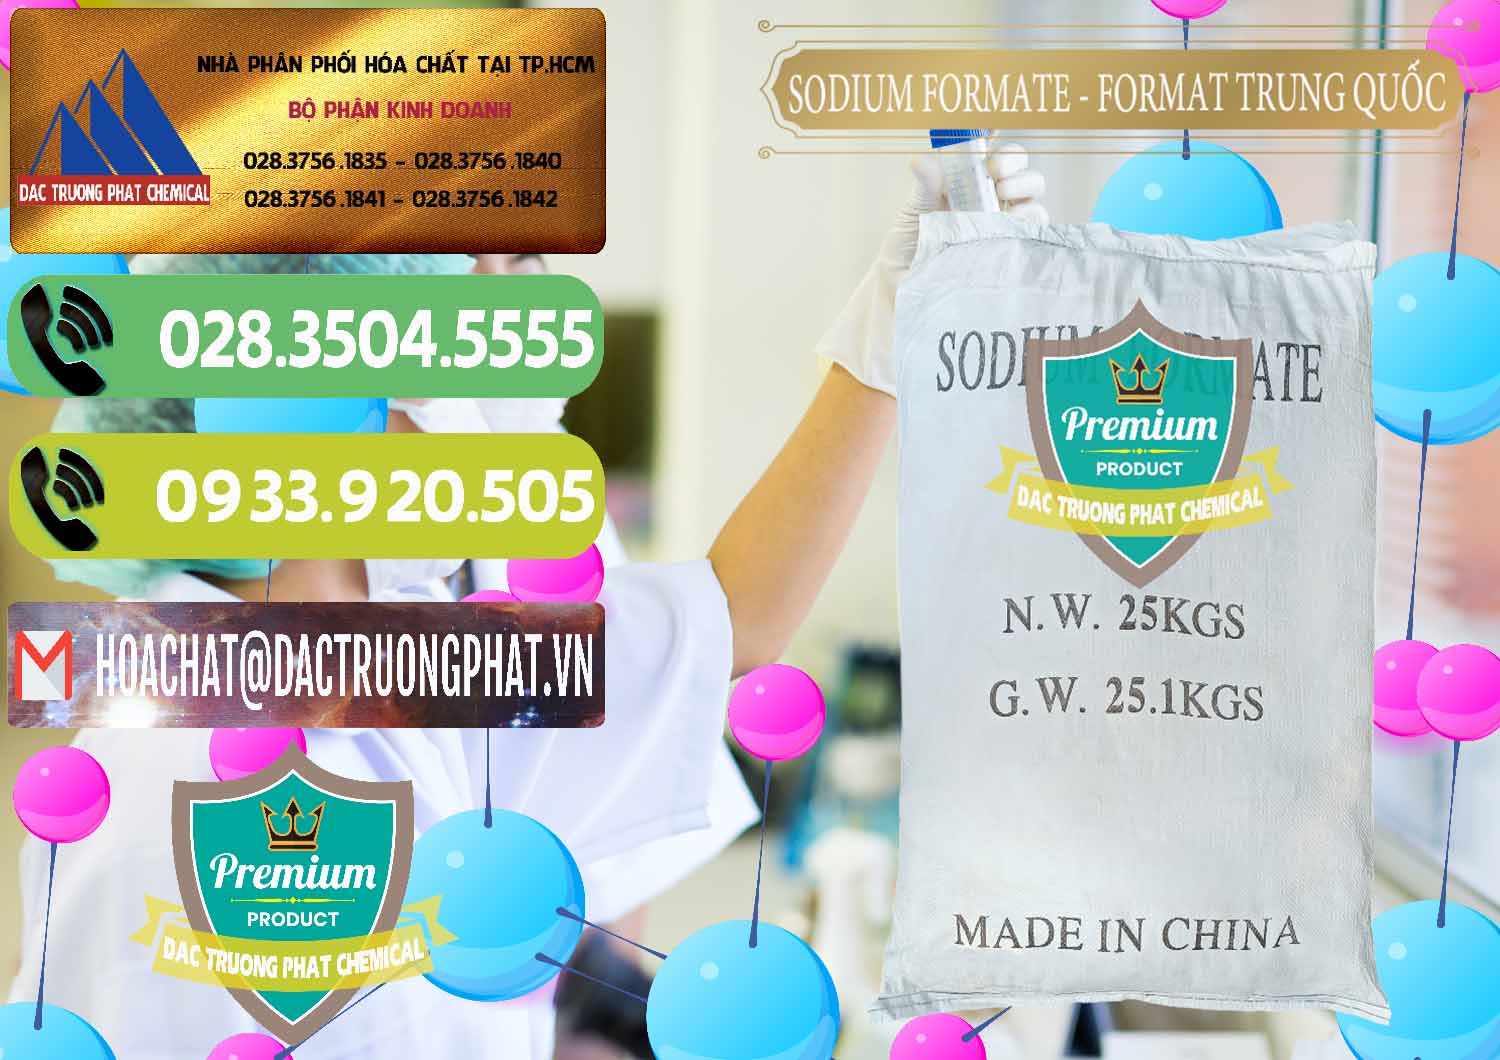 Phân phối và bán Sodium Formate - Natri Format Trung Quốc China - 0142 - Nơi chuyên bán ( phân phối ) hóa chất tại TP.HCM - hoachatmientay.vn